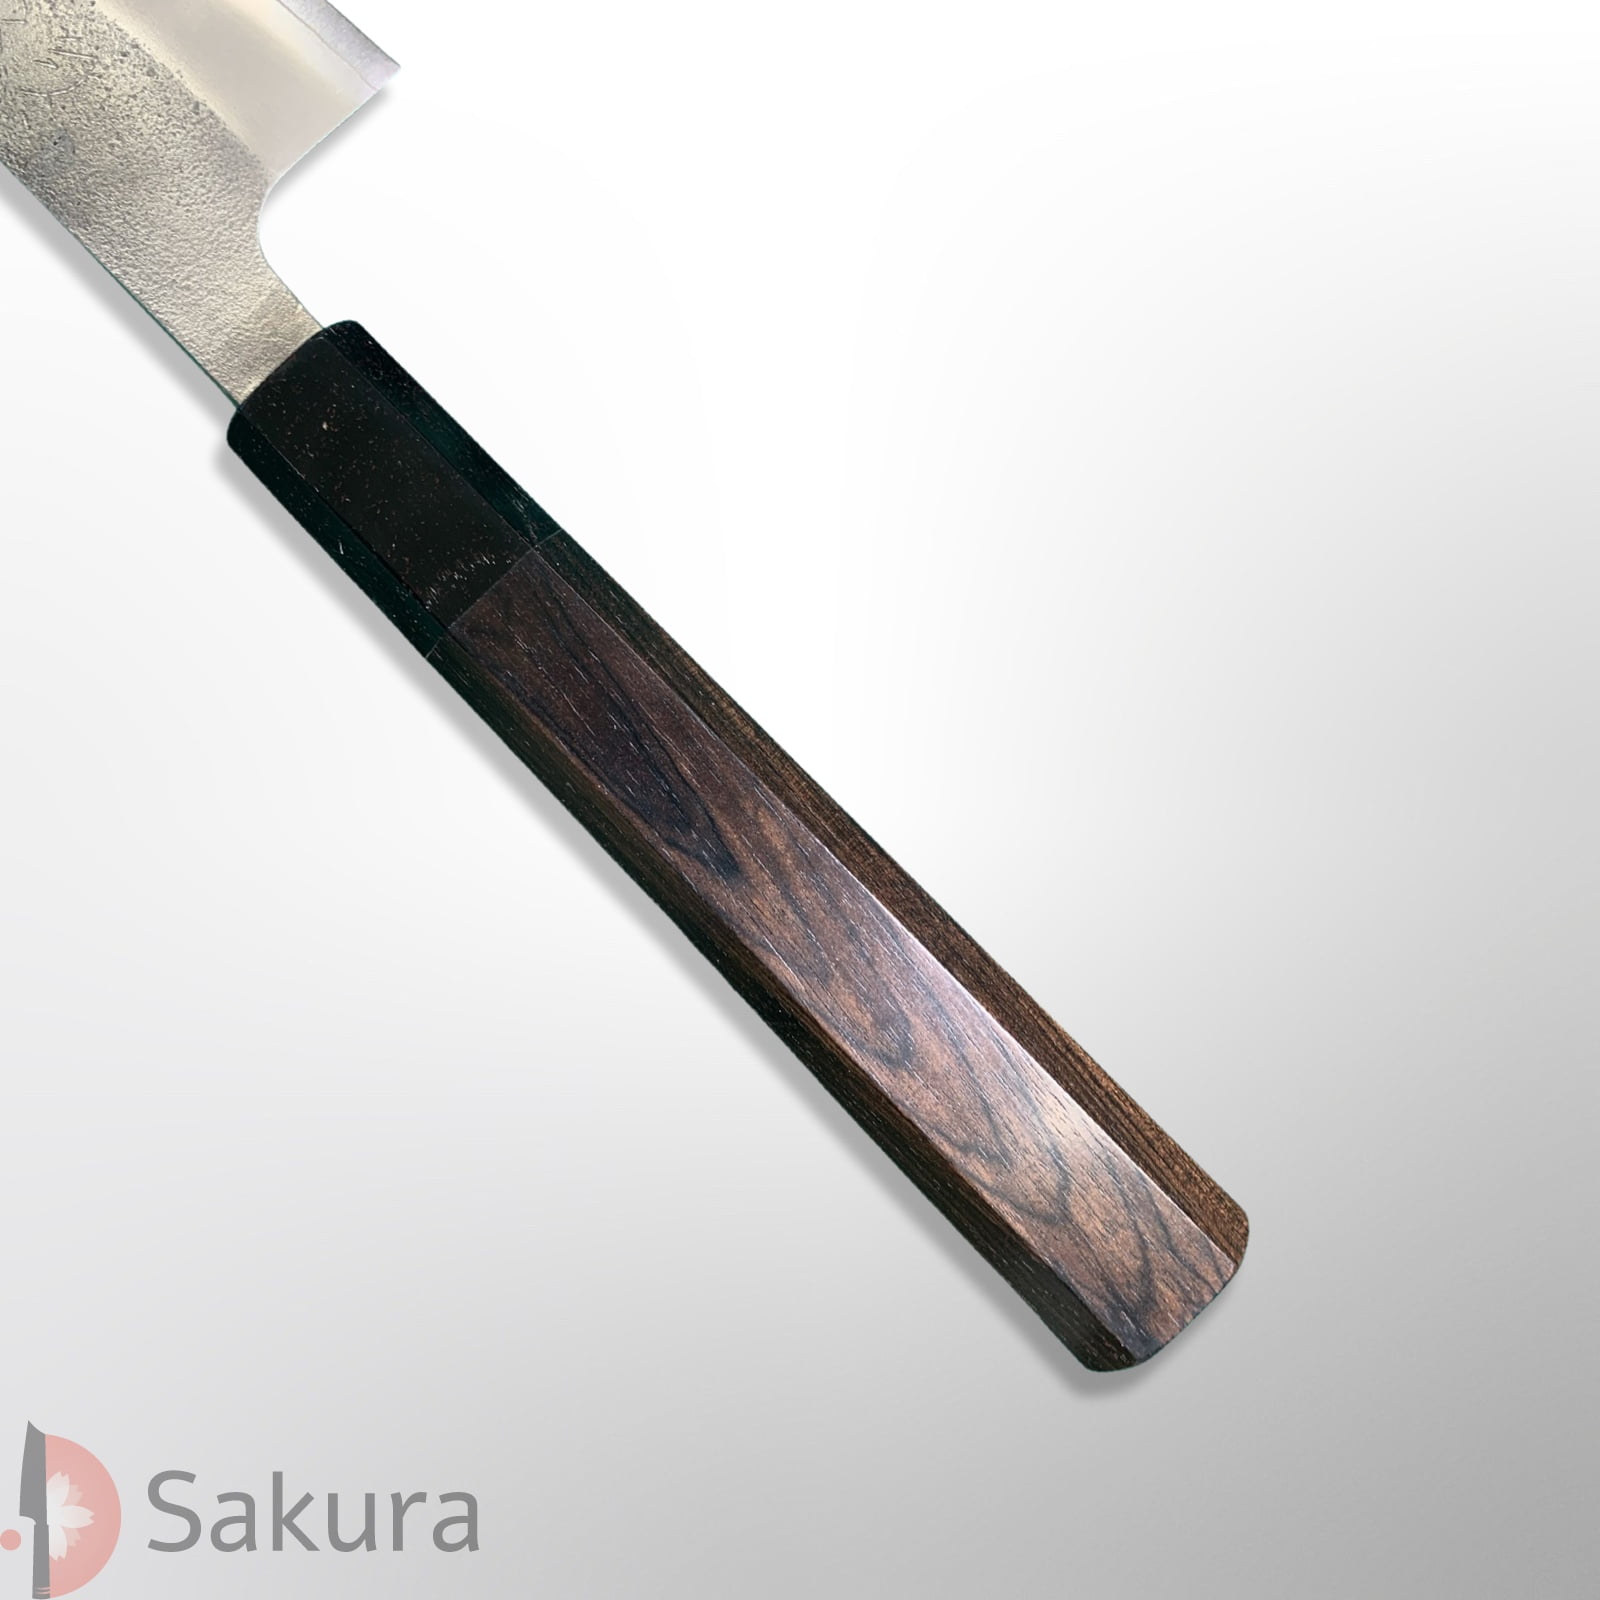 סכין חיתוך ופריסת בשר סוּגִּ’יהִיקִי 270מ״מ מחושלת בעבודת יד 3 שכבות: פלדת פחמן יפנית מתקדמת SKD גימור אל-חלד קורואוצ׳י מט חיספוס טבעי יושיקאנה יפן – SKYOSHSKDNSSUJI24024 (Copy)